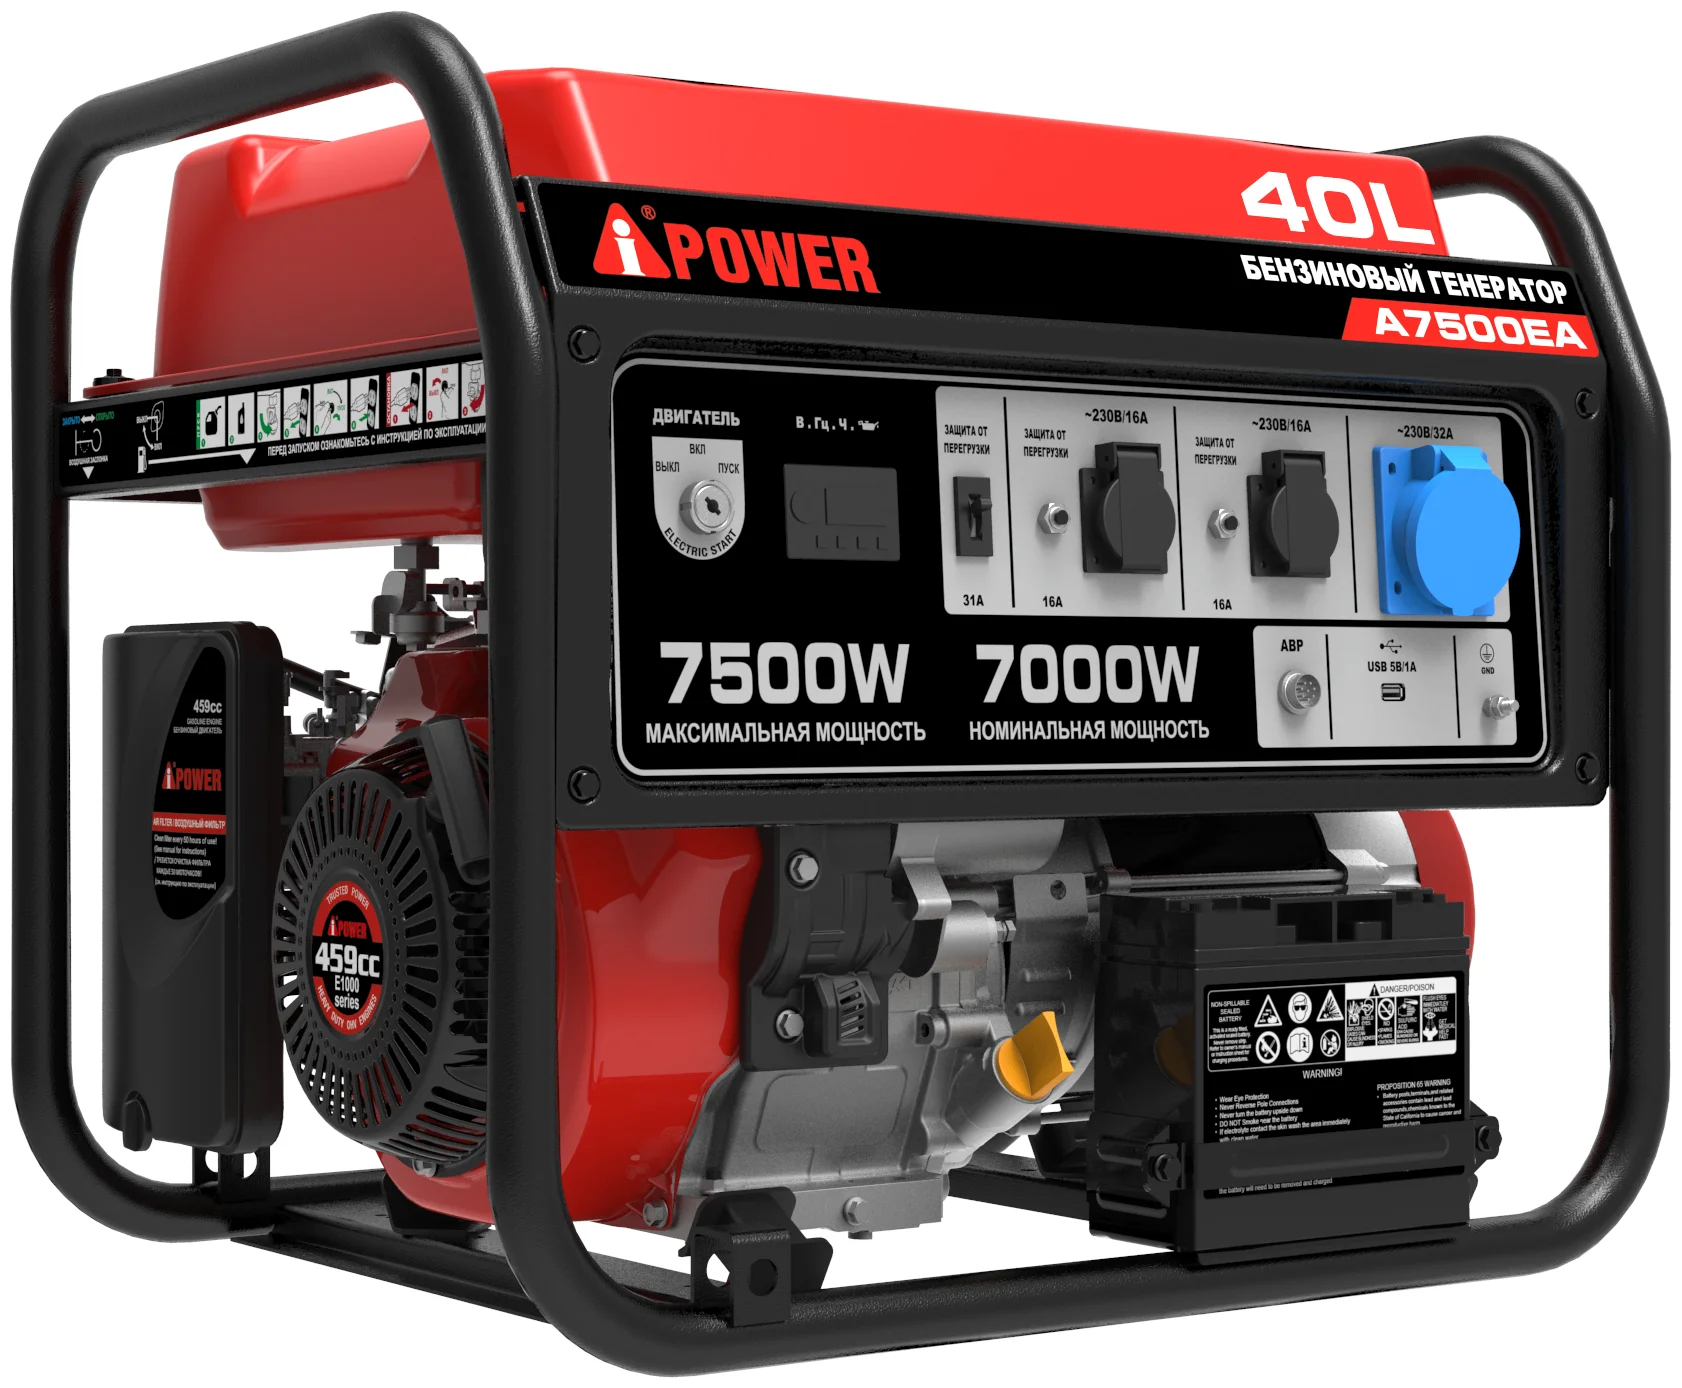 A-iPower A7500EA, (7500 Вт) - максимальная мощность: 7500 Вт